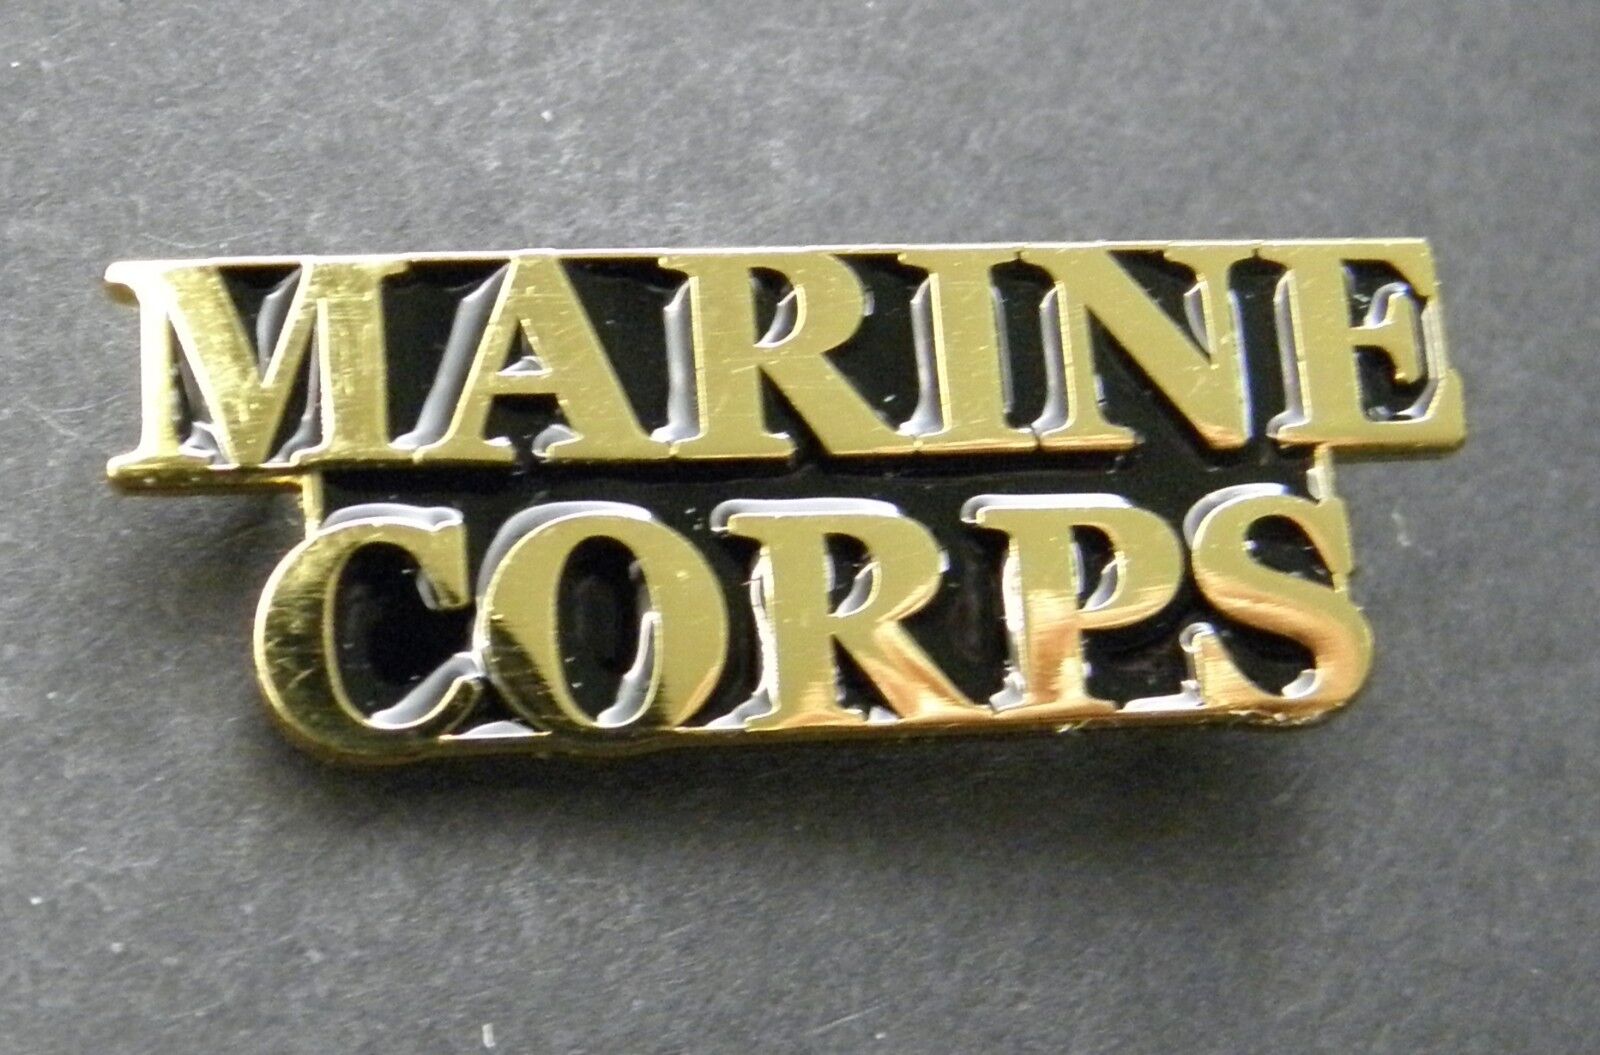 USMC MARINE CORPS US MARINES SCRIPT LAPEL PIN BADGE 1.5 INCHES